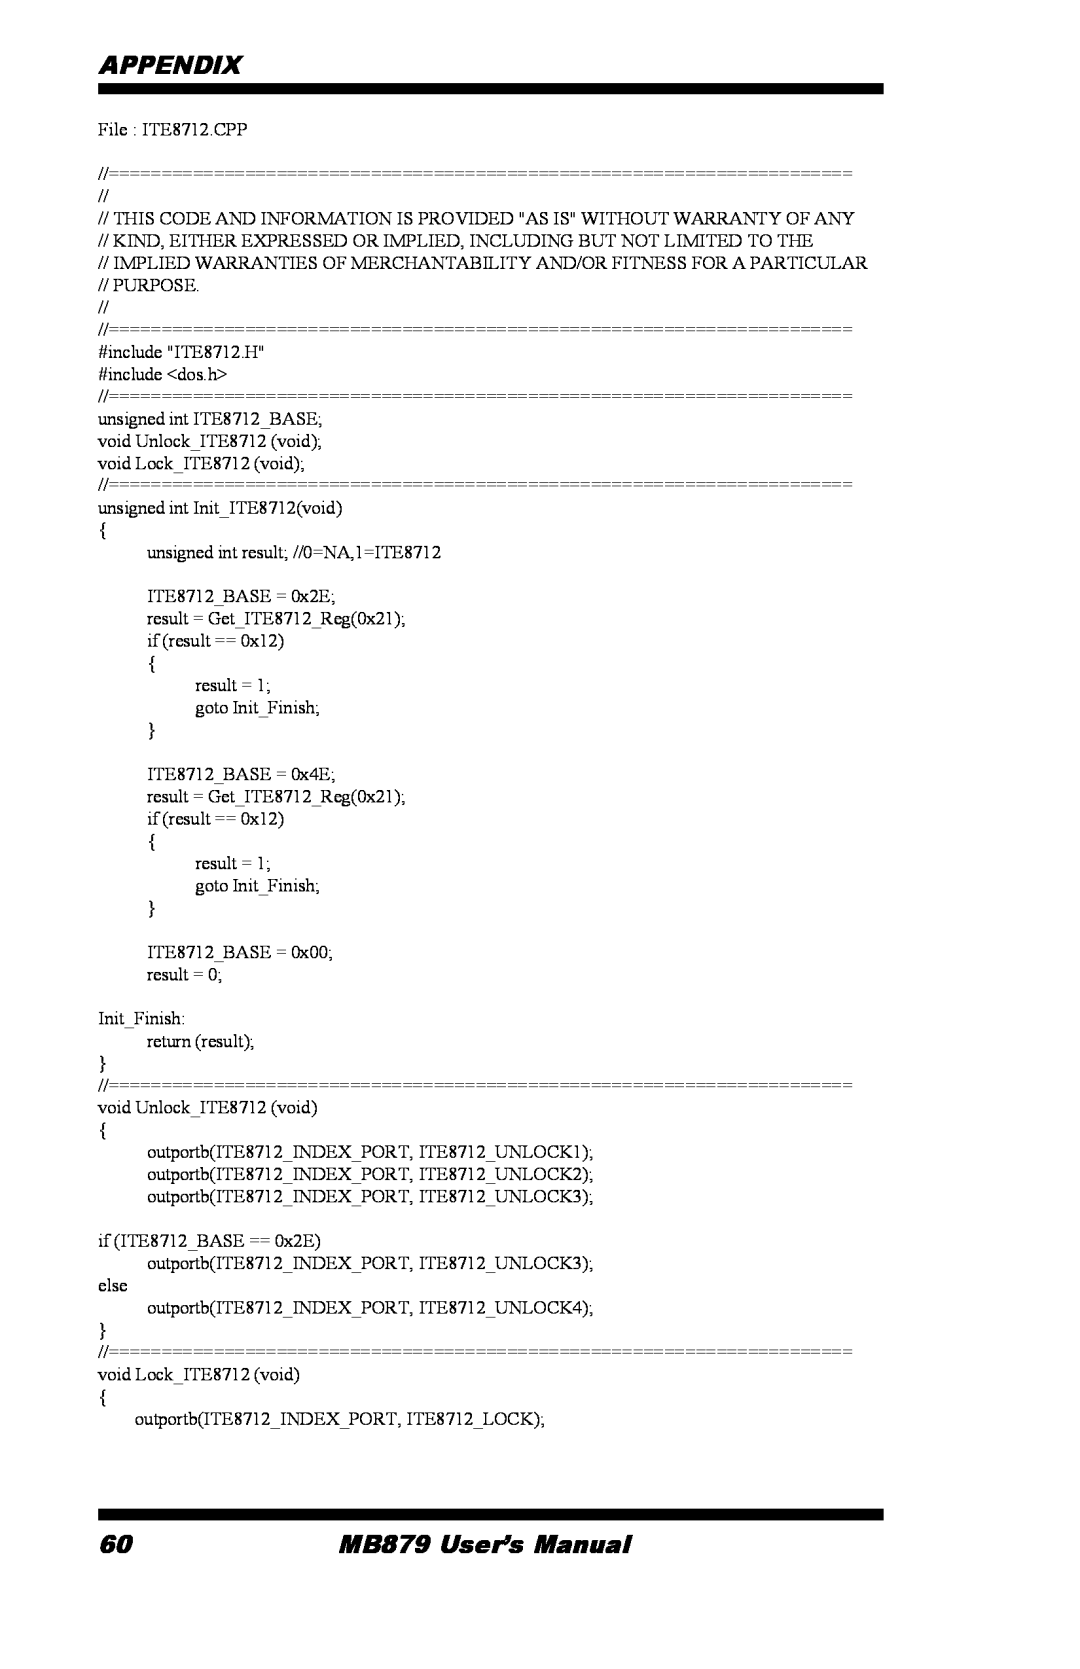 Intel user manual Appendix, MB879 User’s Manual 